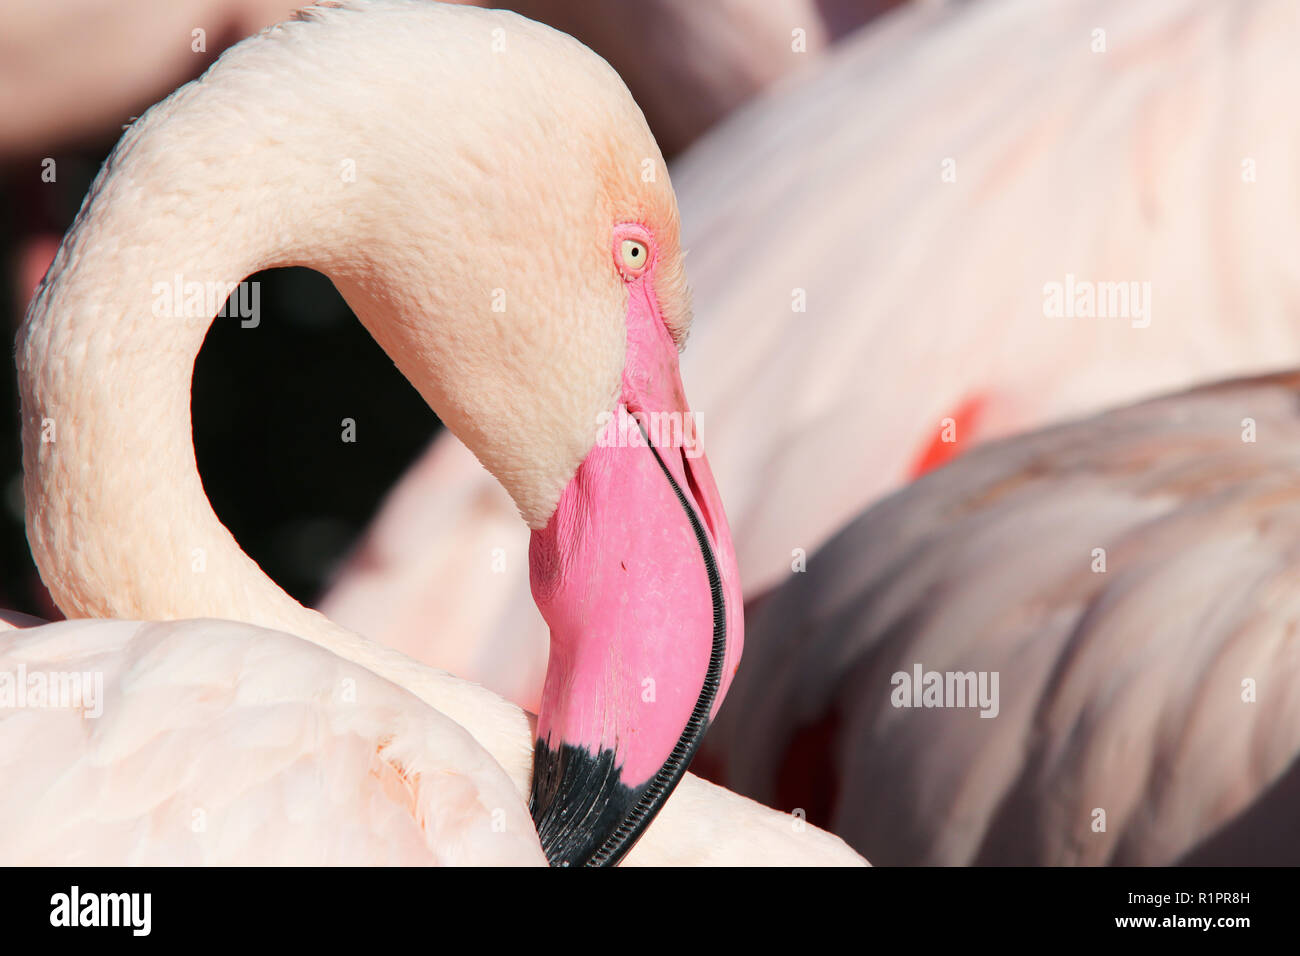 Flamingo râpe - gros plan de la tête de flamingo râpe Banque D'Images